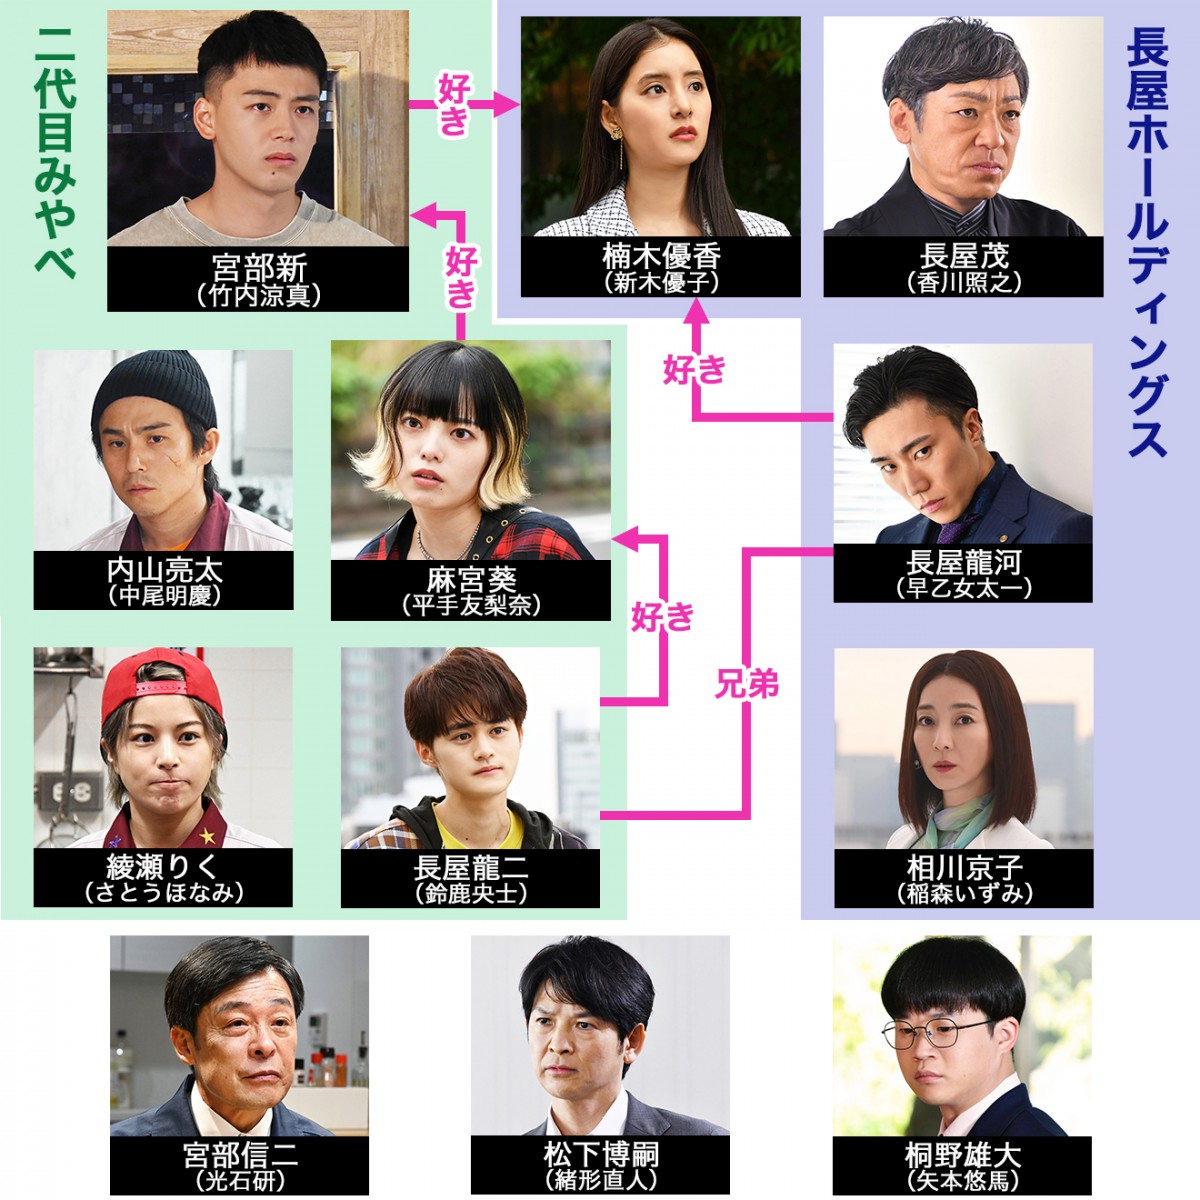 六本木クラス キャスト 登場人物 出演者一覧 相関図 22年7月期放送 Oricon News